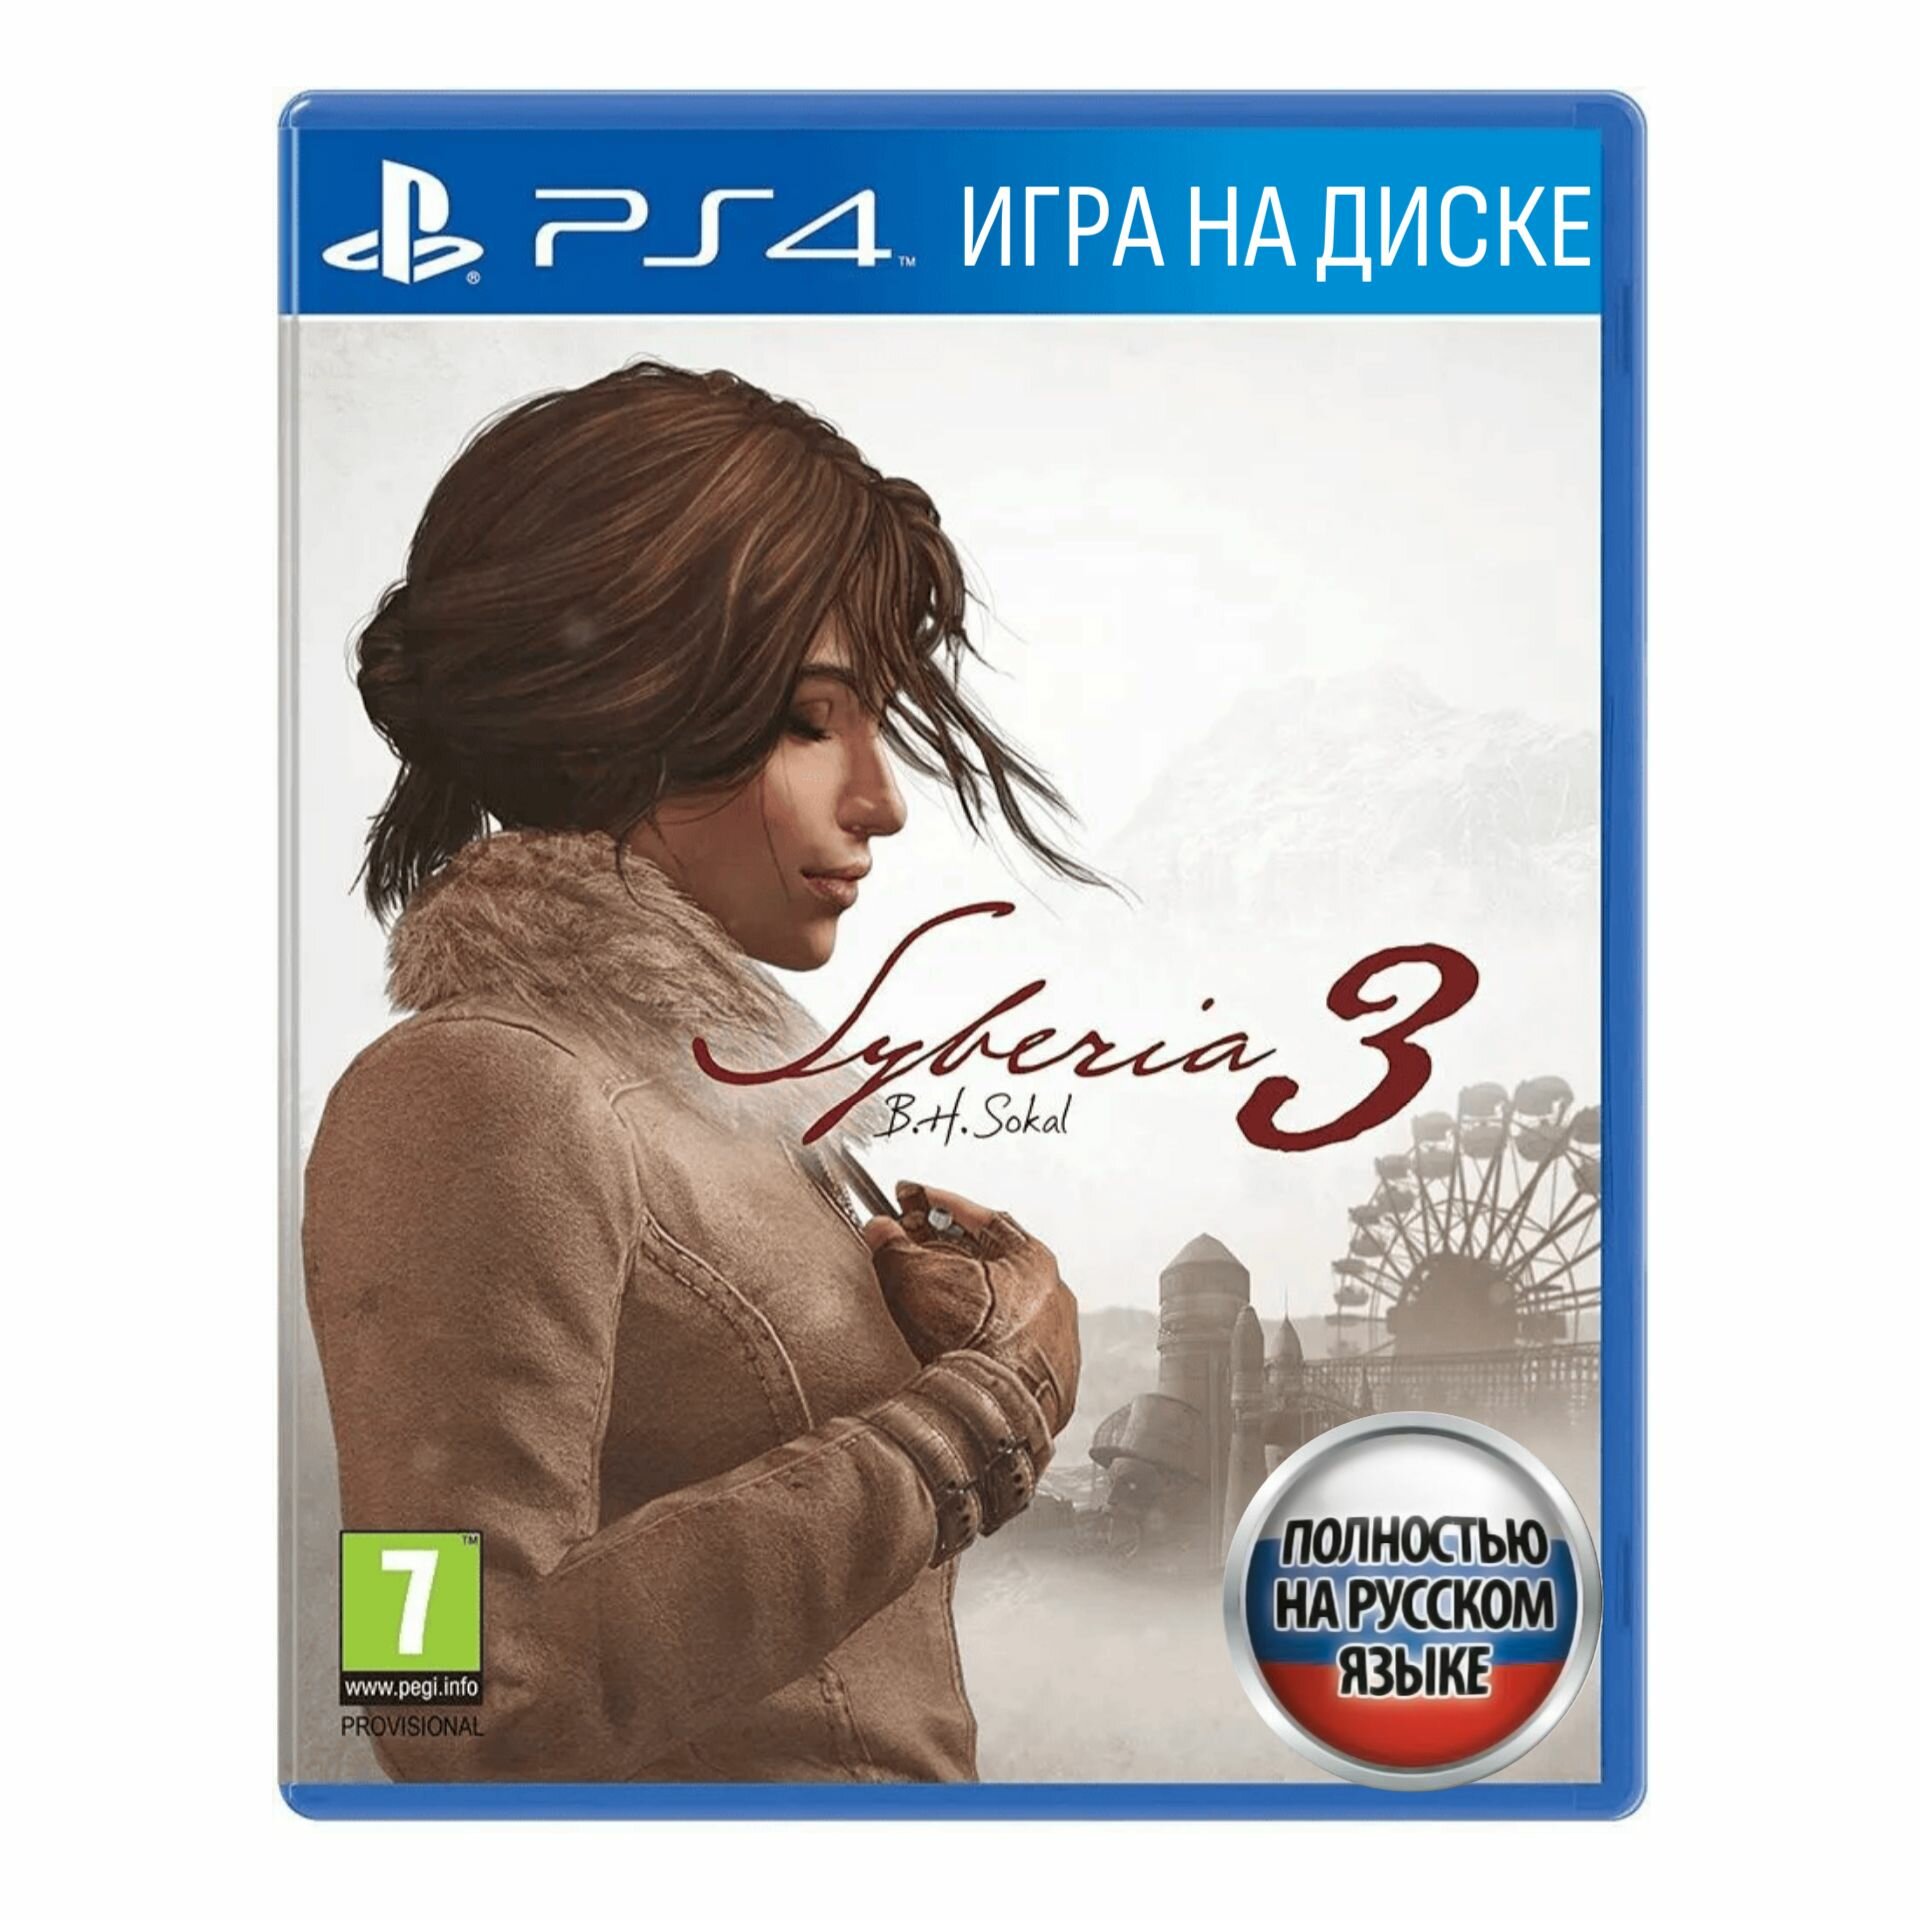 Игра Сибирь 3 (Syberia 3) (PlayStation 4 Русская версия)